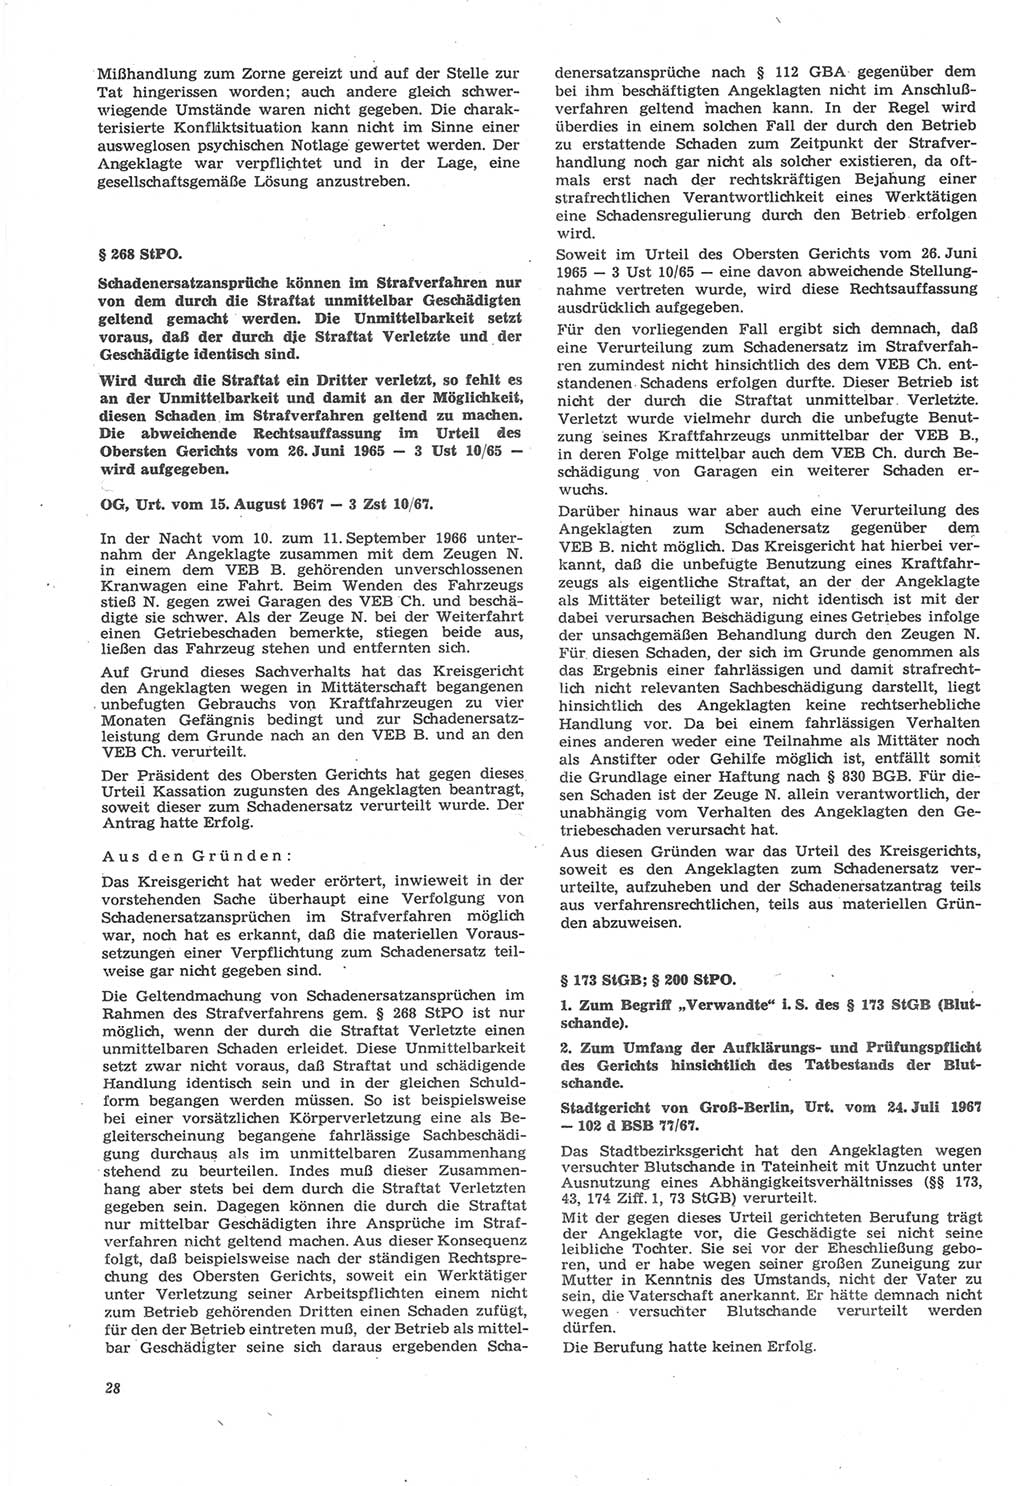 Neue Justiz (NJ), Zeitschrift für Recht und Rechtswissenschaft [Deutsche Demokratische Republik (DDR)], 22. Jahrgang 1968, Seite 28 (NJ DDR 1968, S. 28)